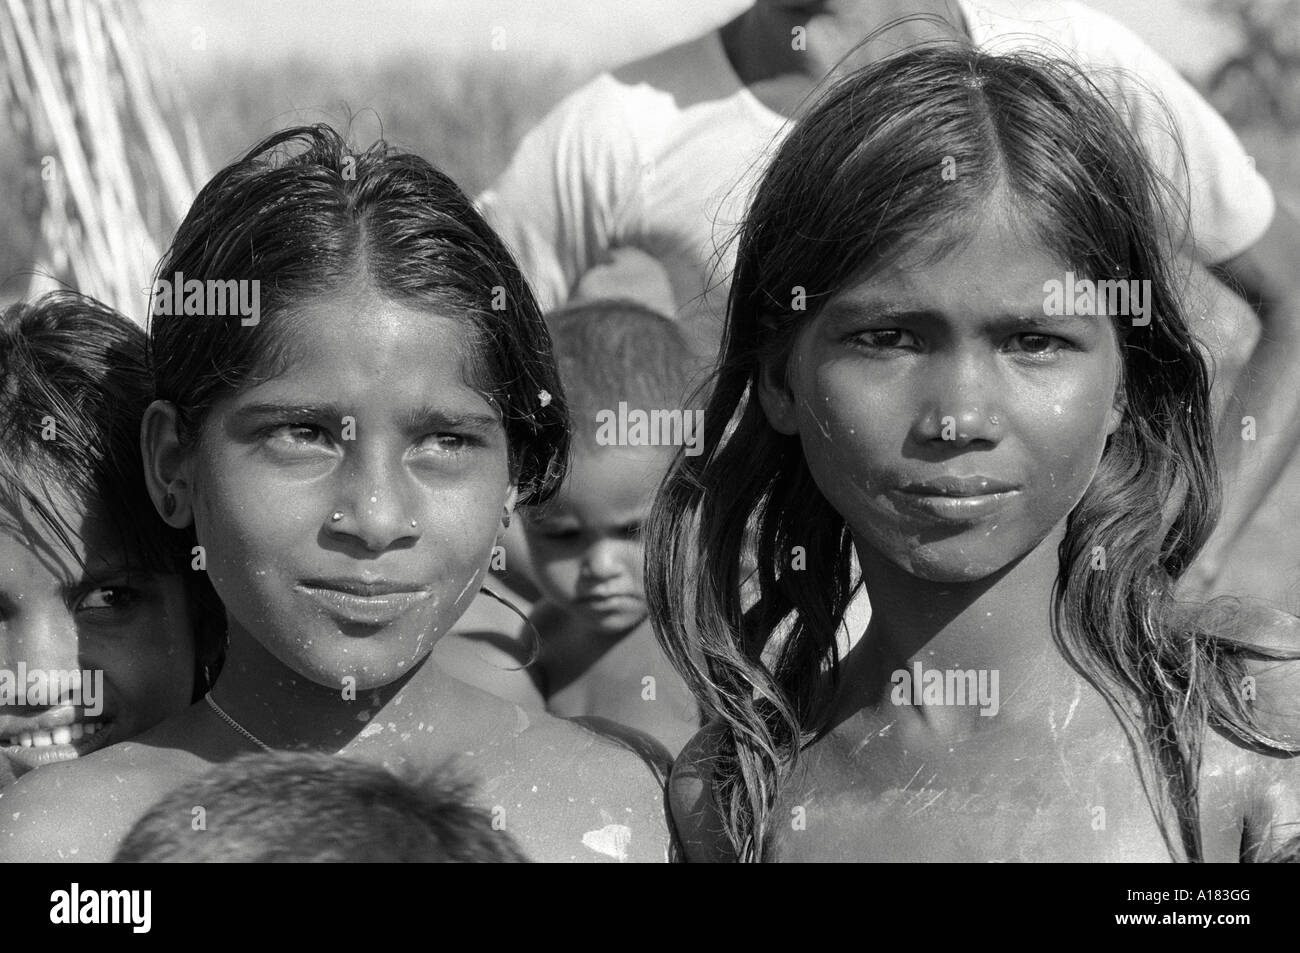 Portrait N/B des enfants secourus de leur village coupé par les eaux de crue. Khulna, Bangladesh Banque D'Images